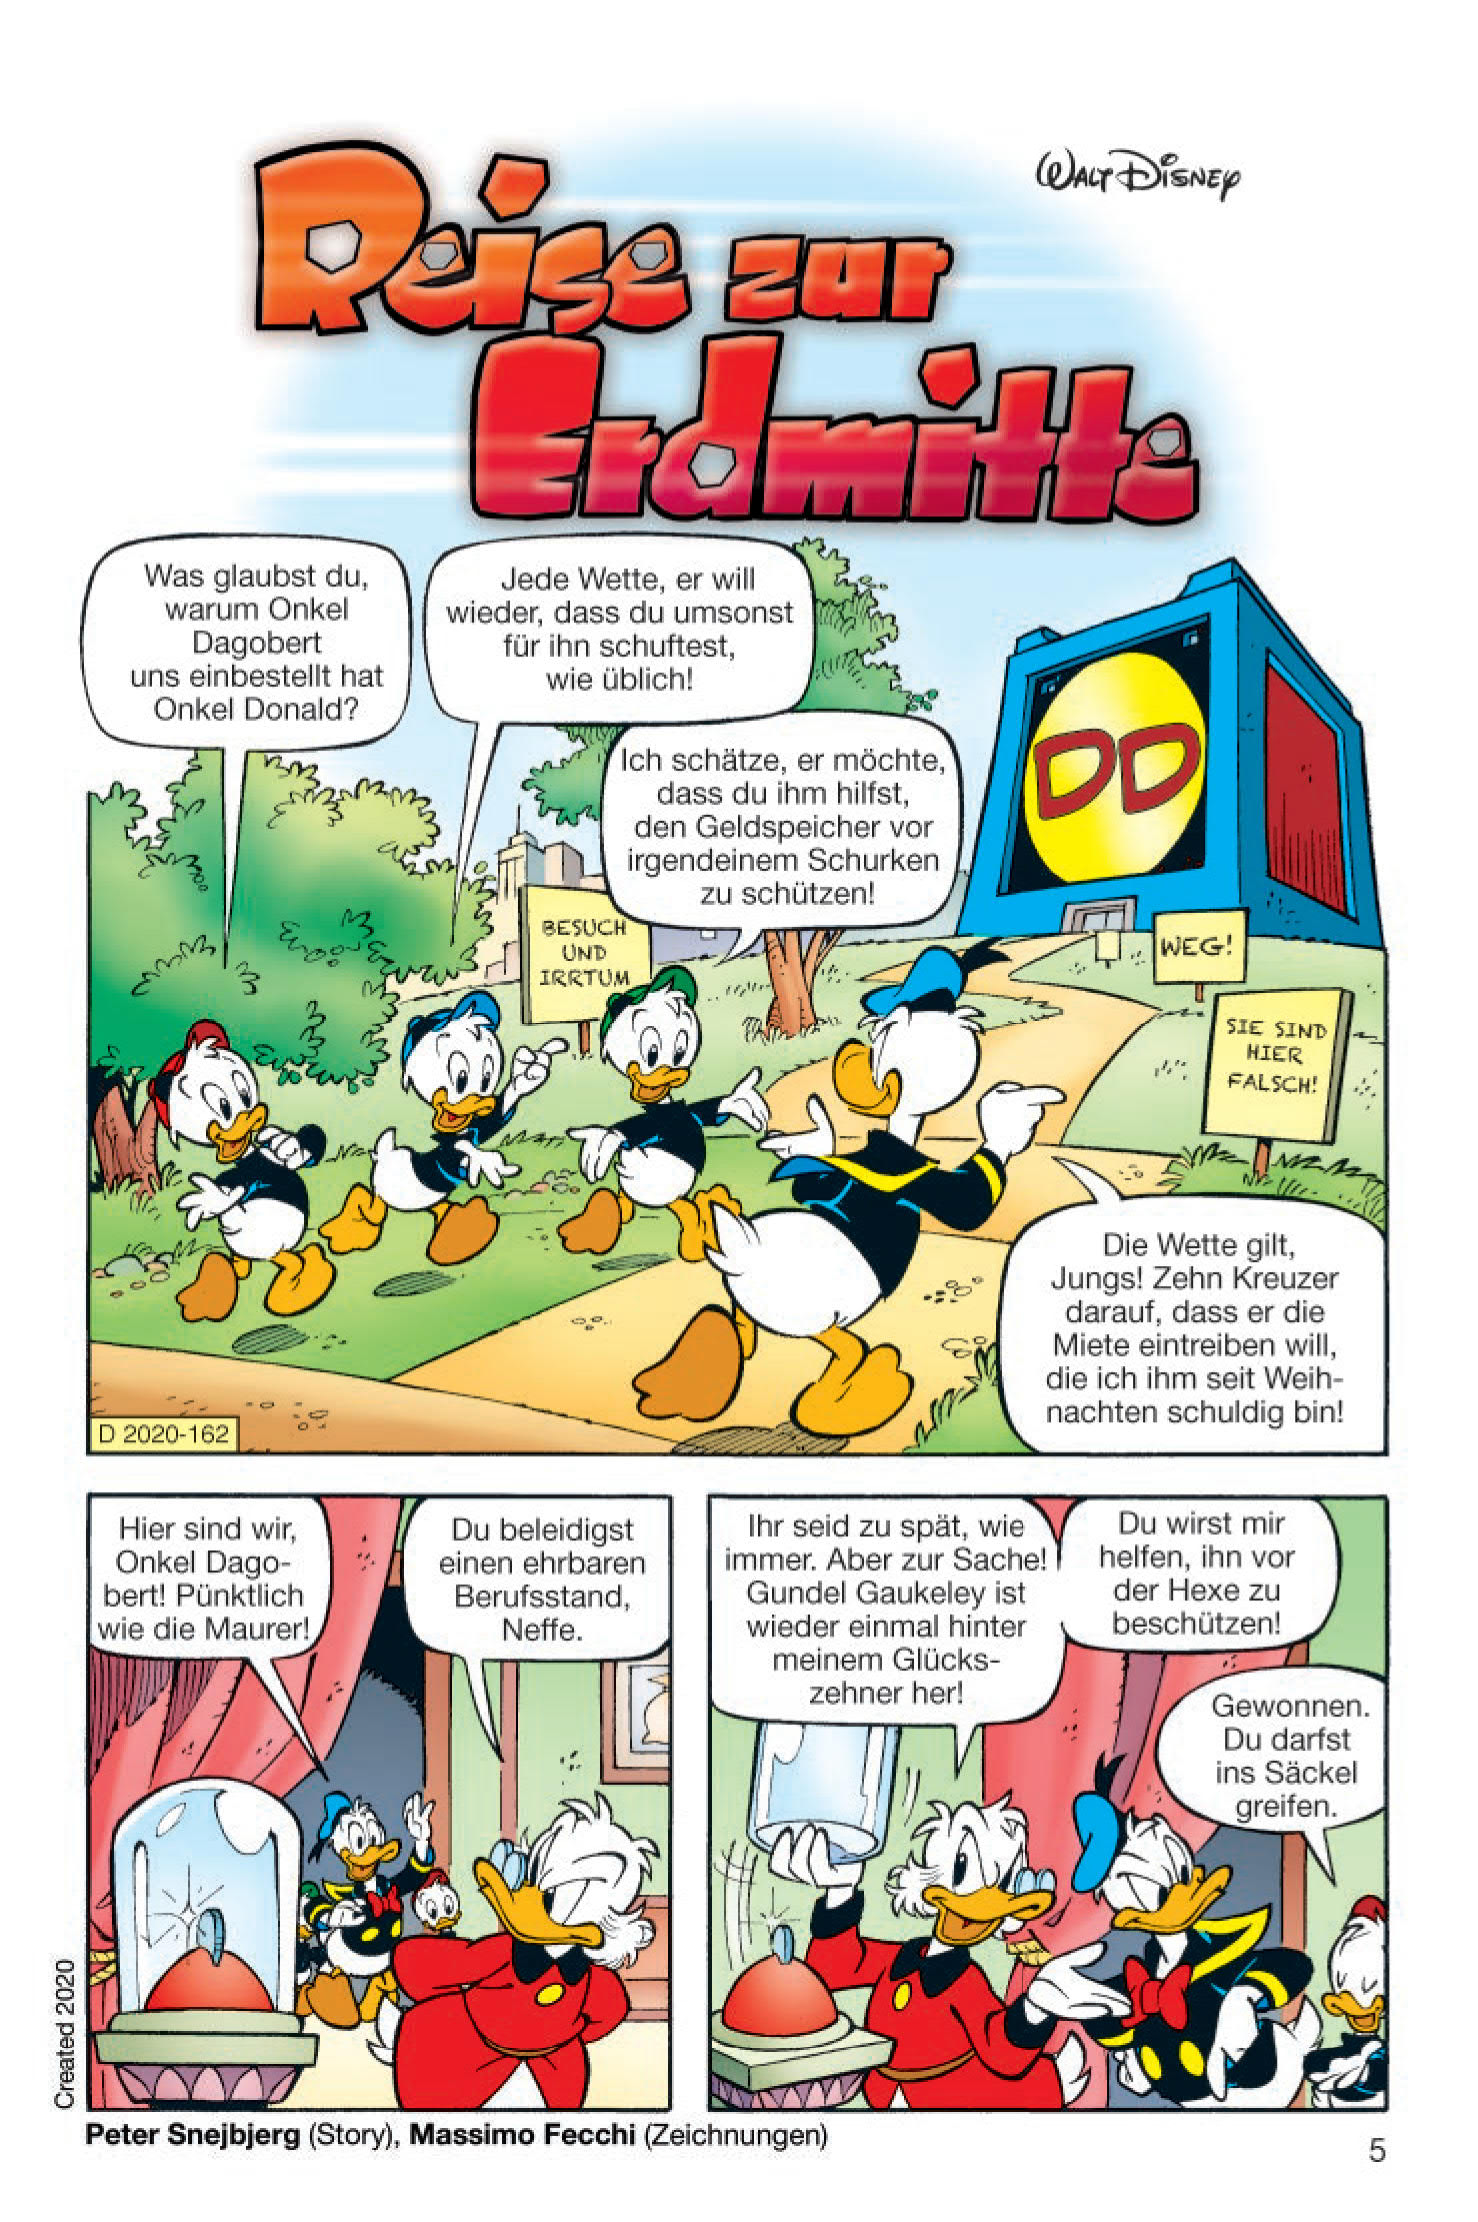 TOP 385-397 komplett  LTB Taschbuch Comic Duck *portofreier Schnellversand 542 